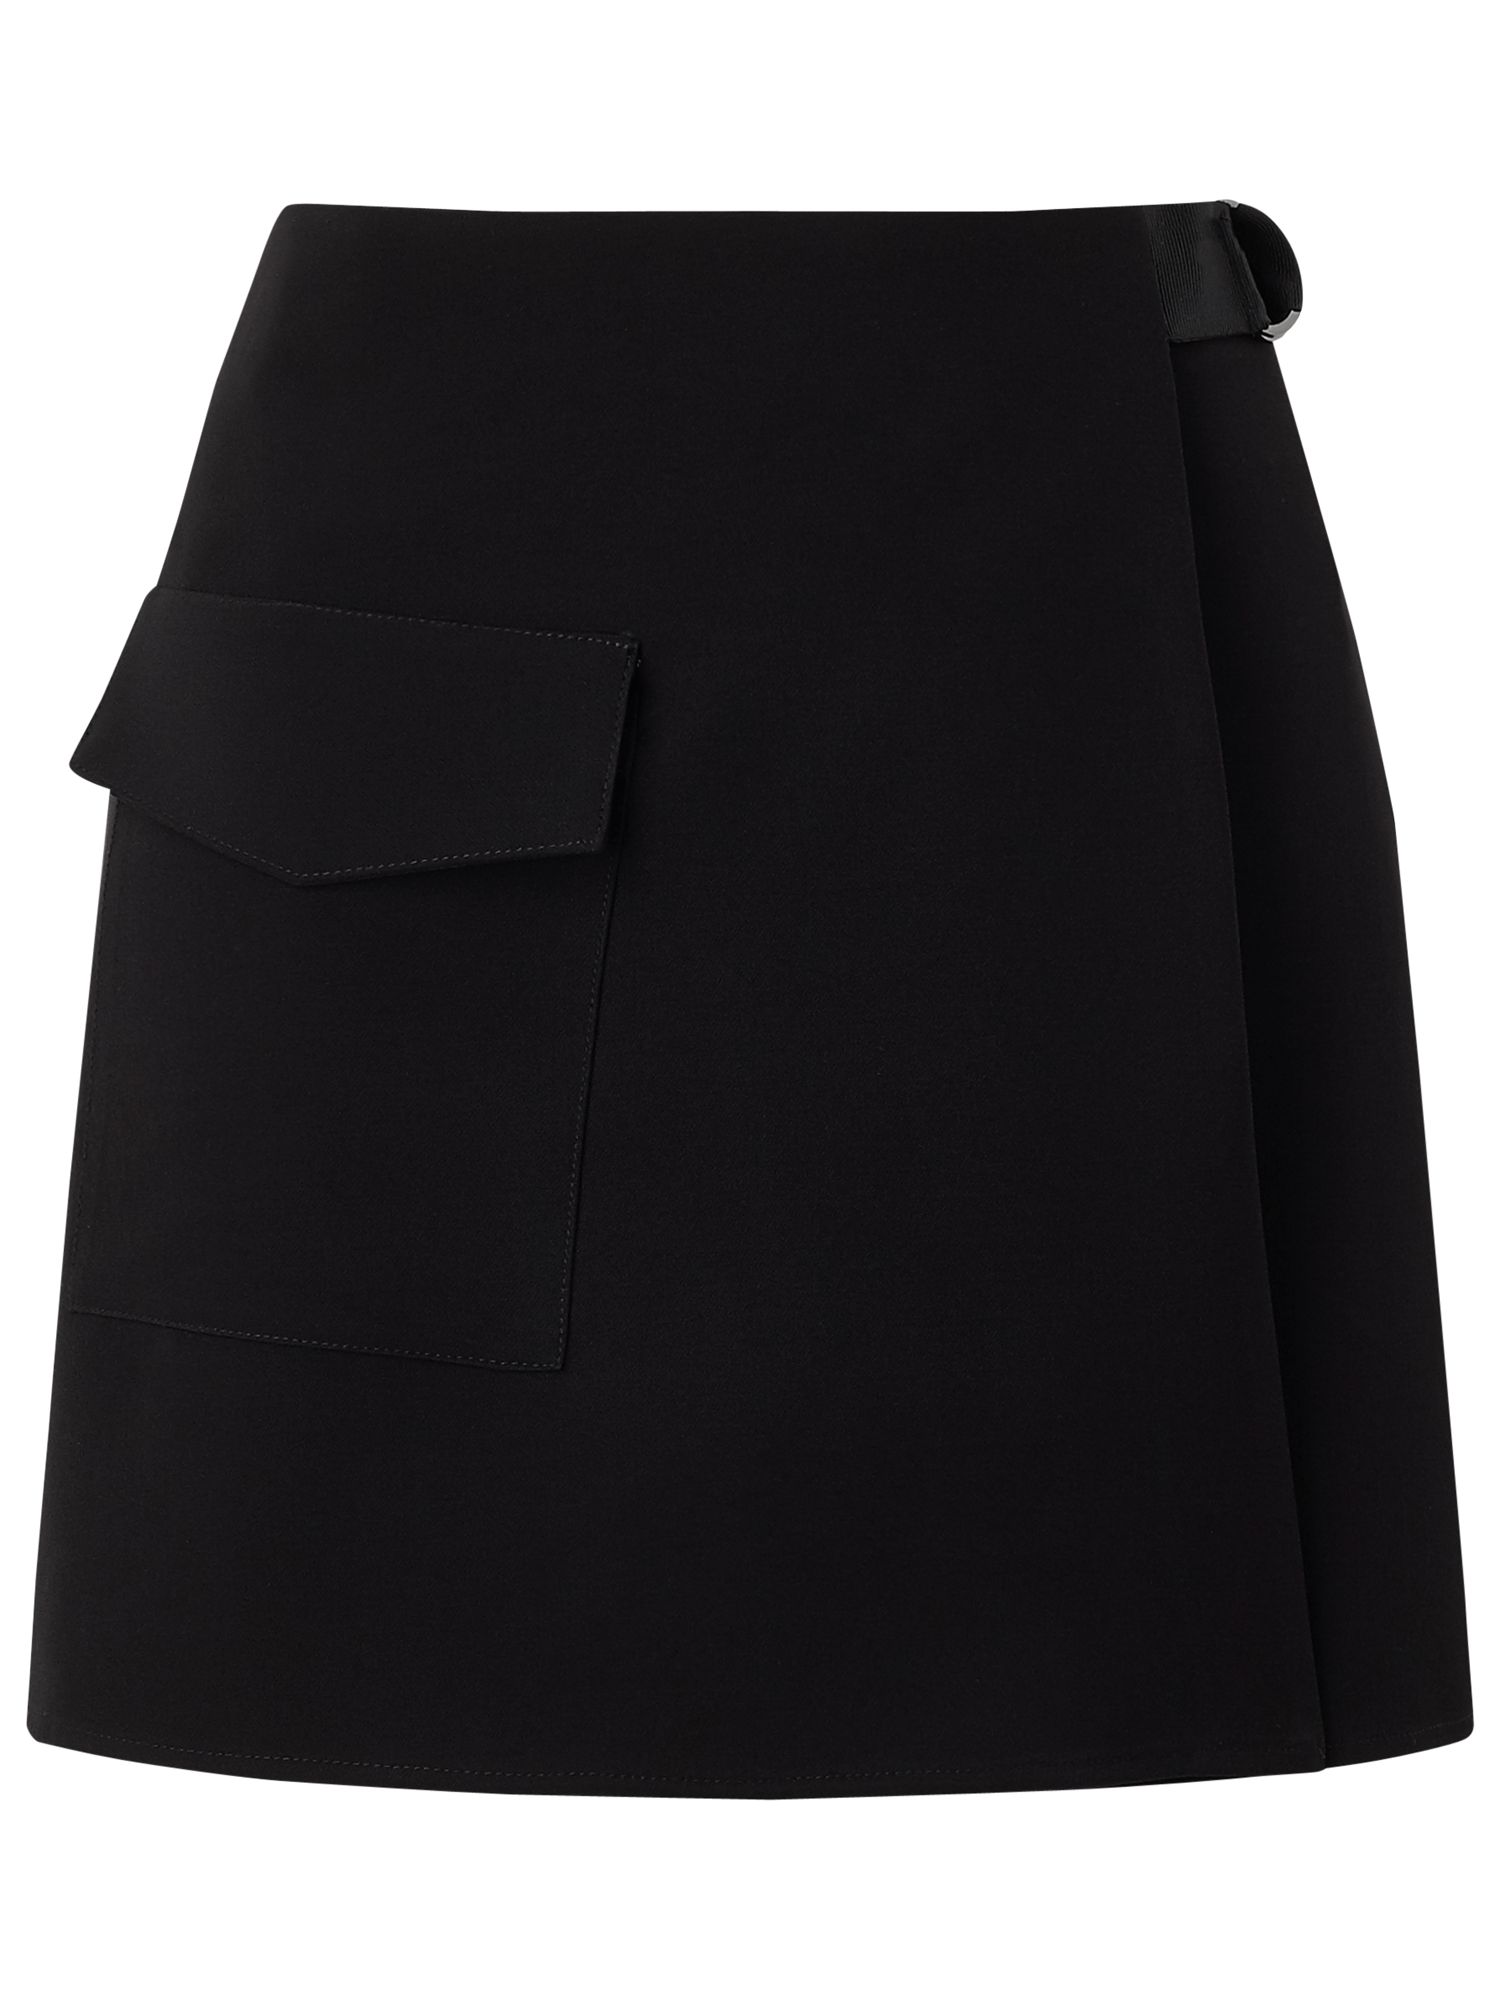 Miss Selfridge D-Ring Pocket Mini Skirt, Black